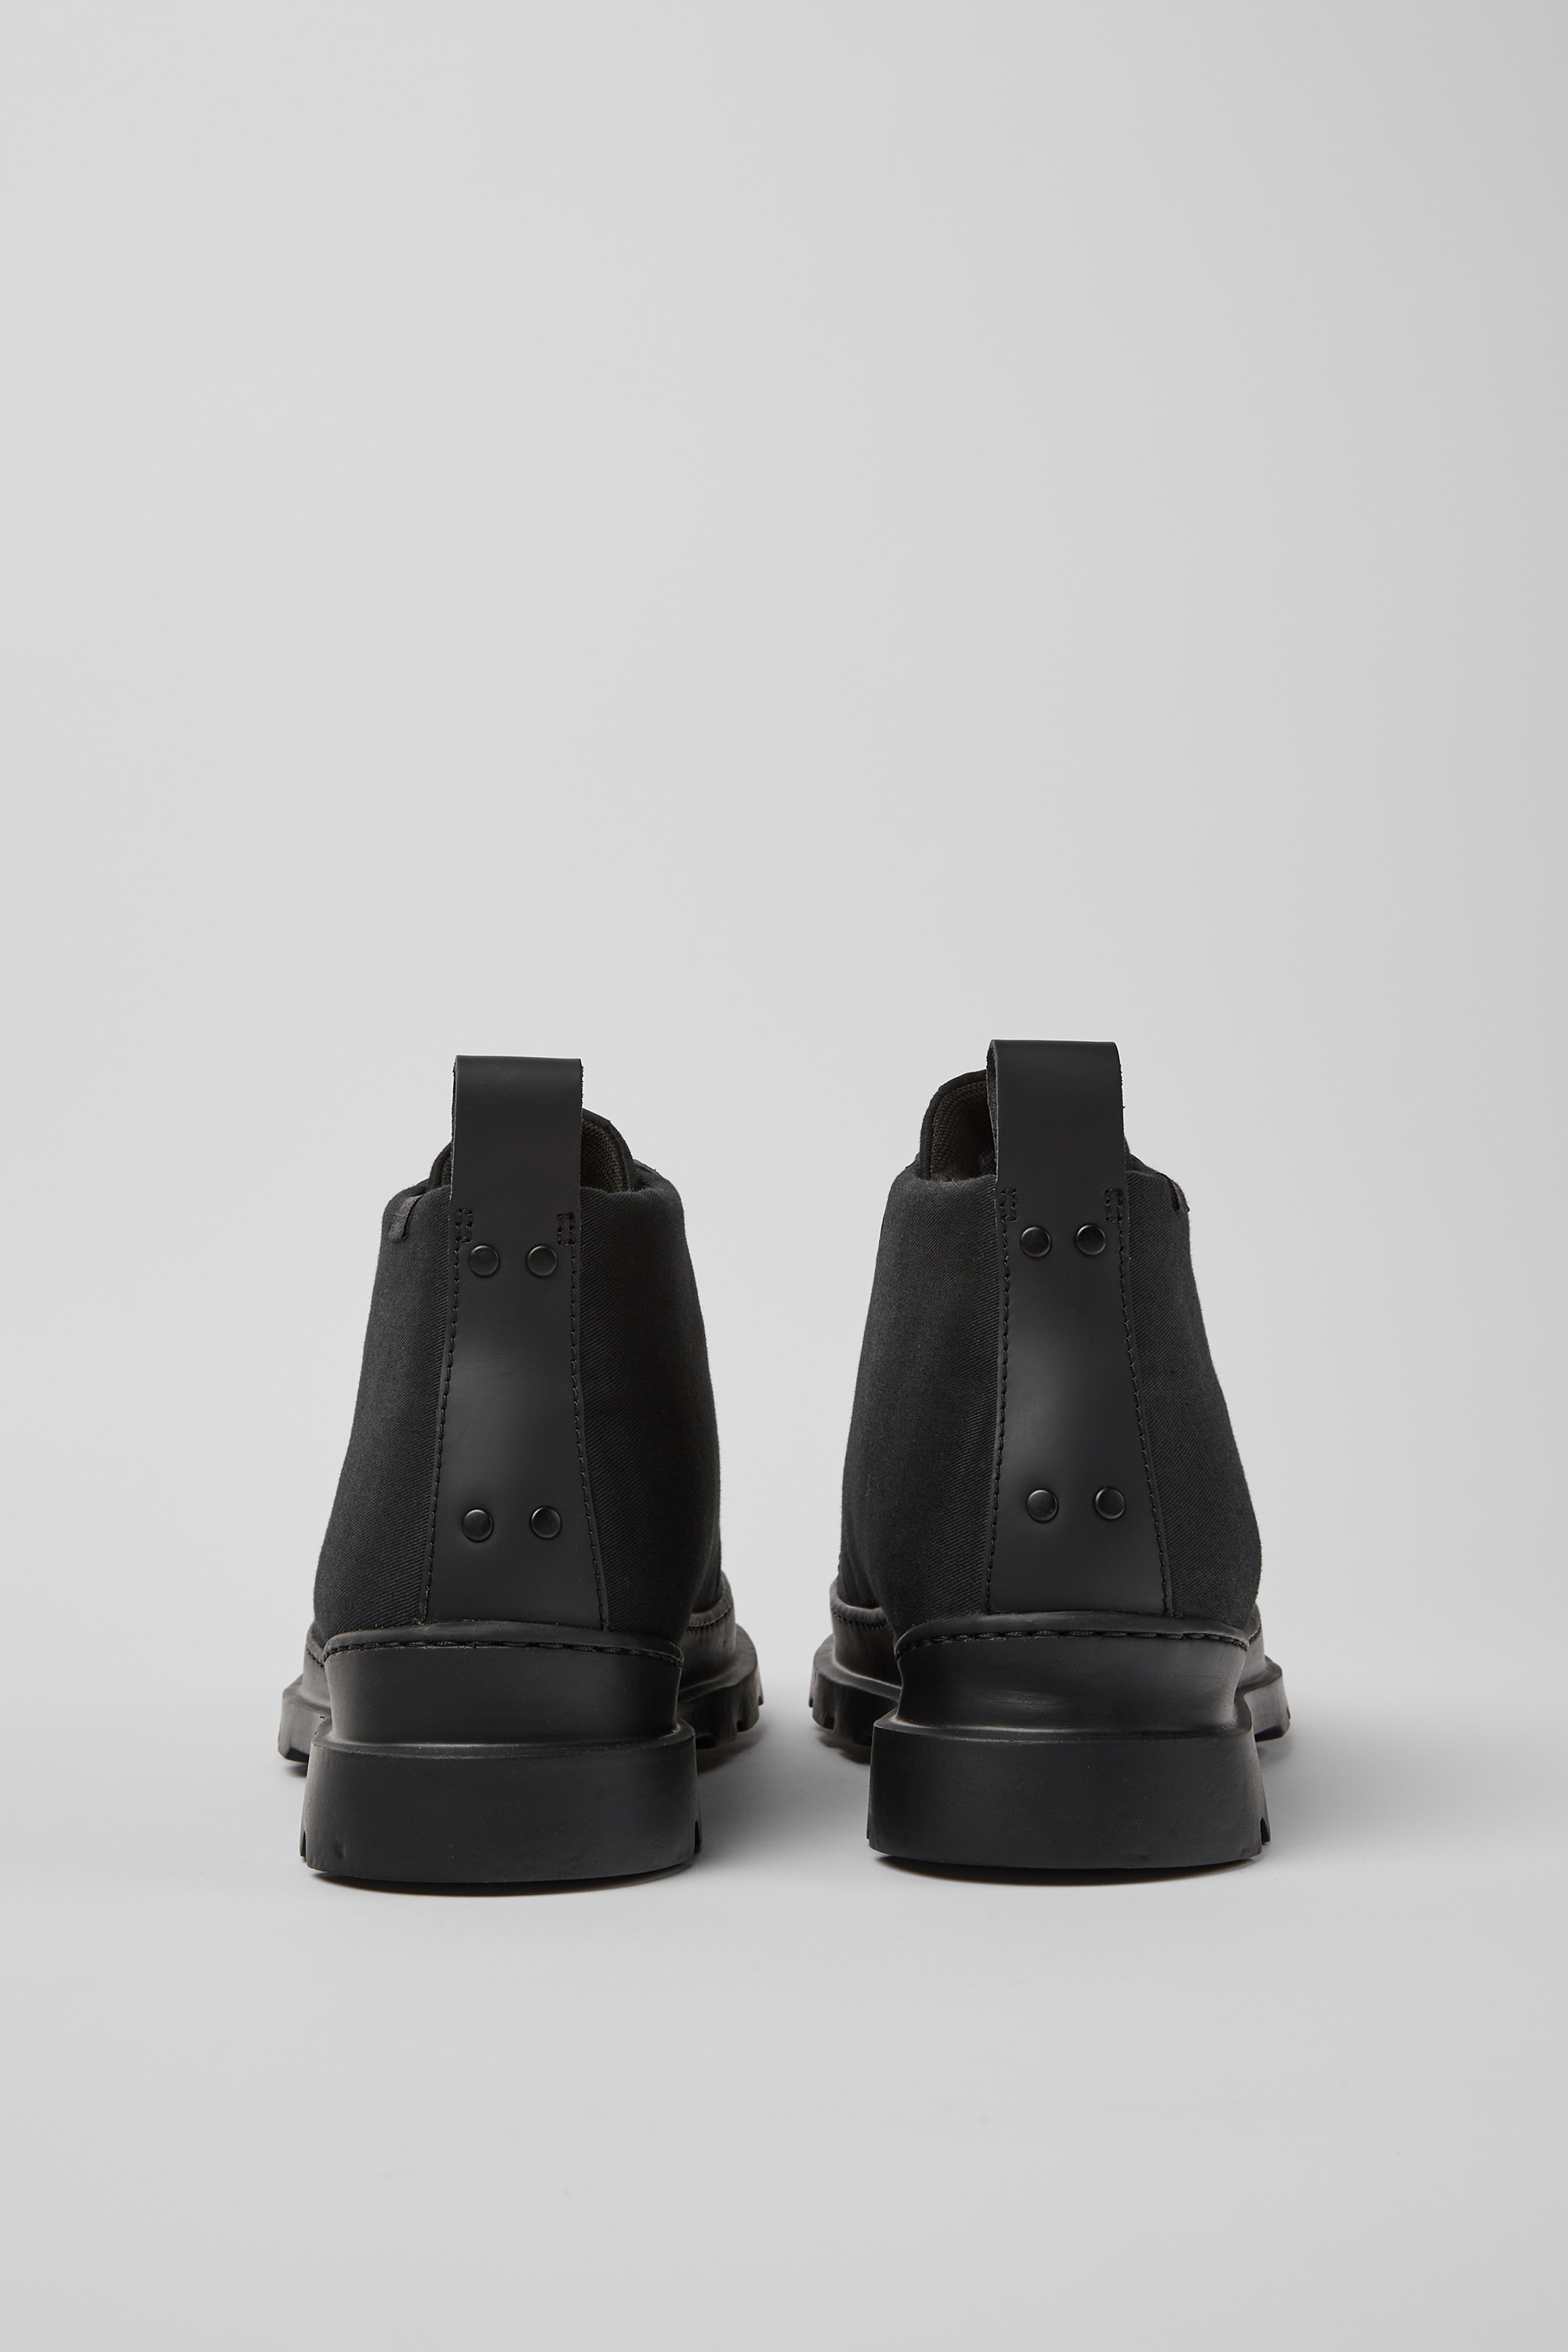 Camper Outlet: shoes for boys - Grey  Camper shoes K900295-001 BRUTUS  online at